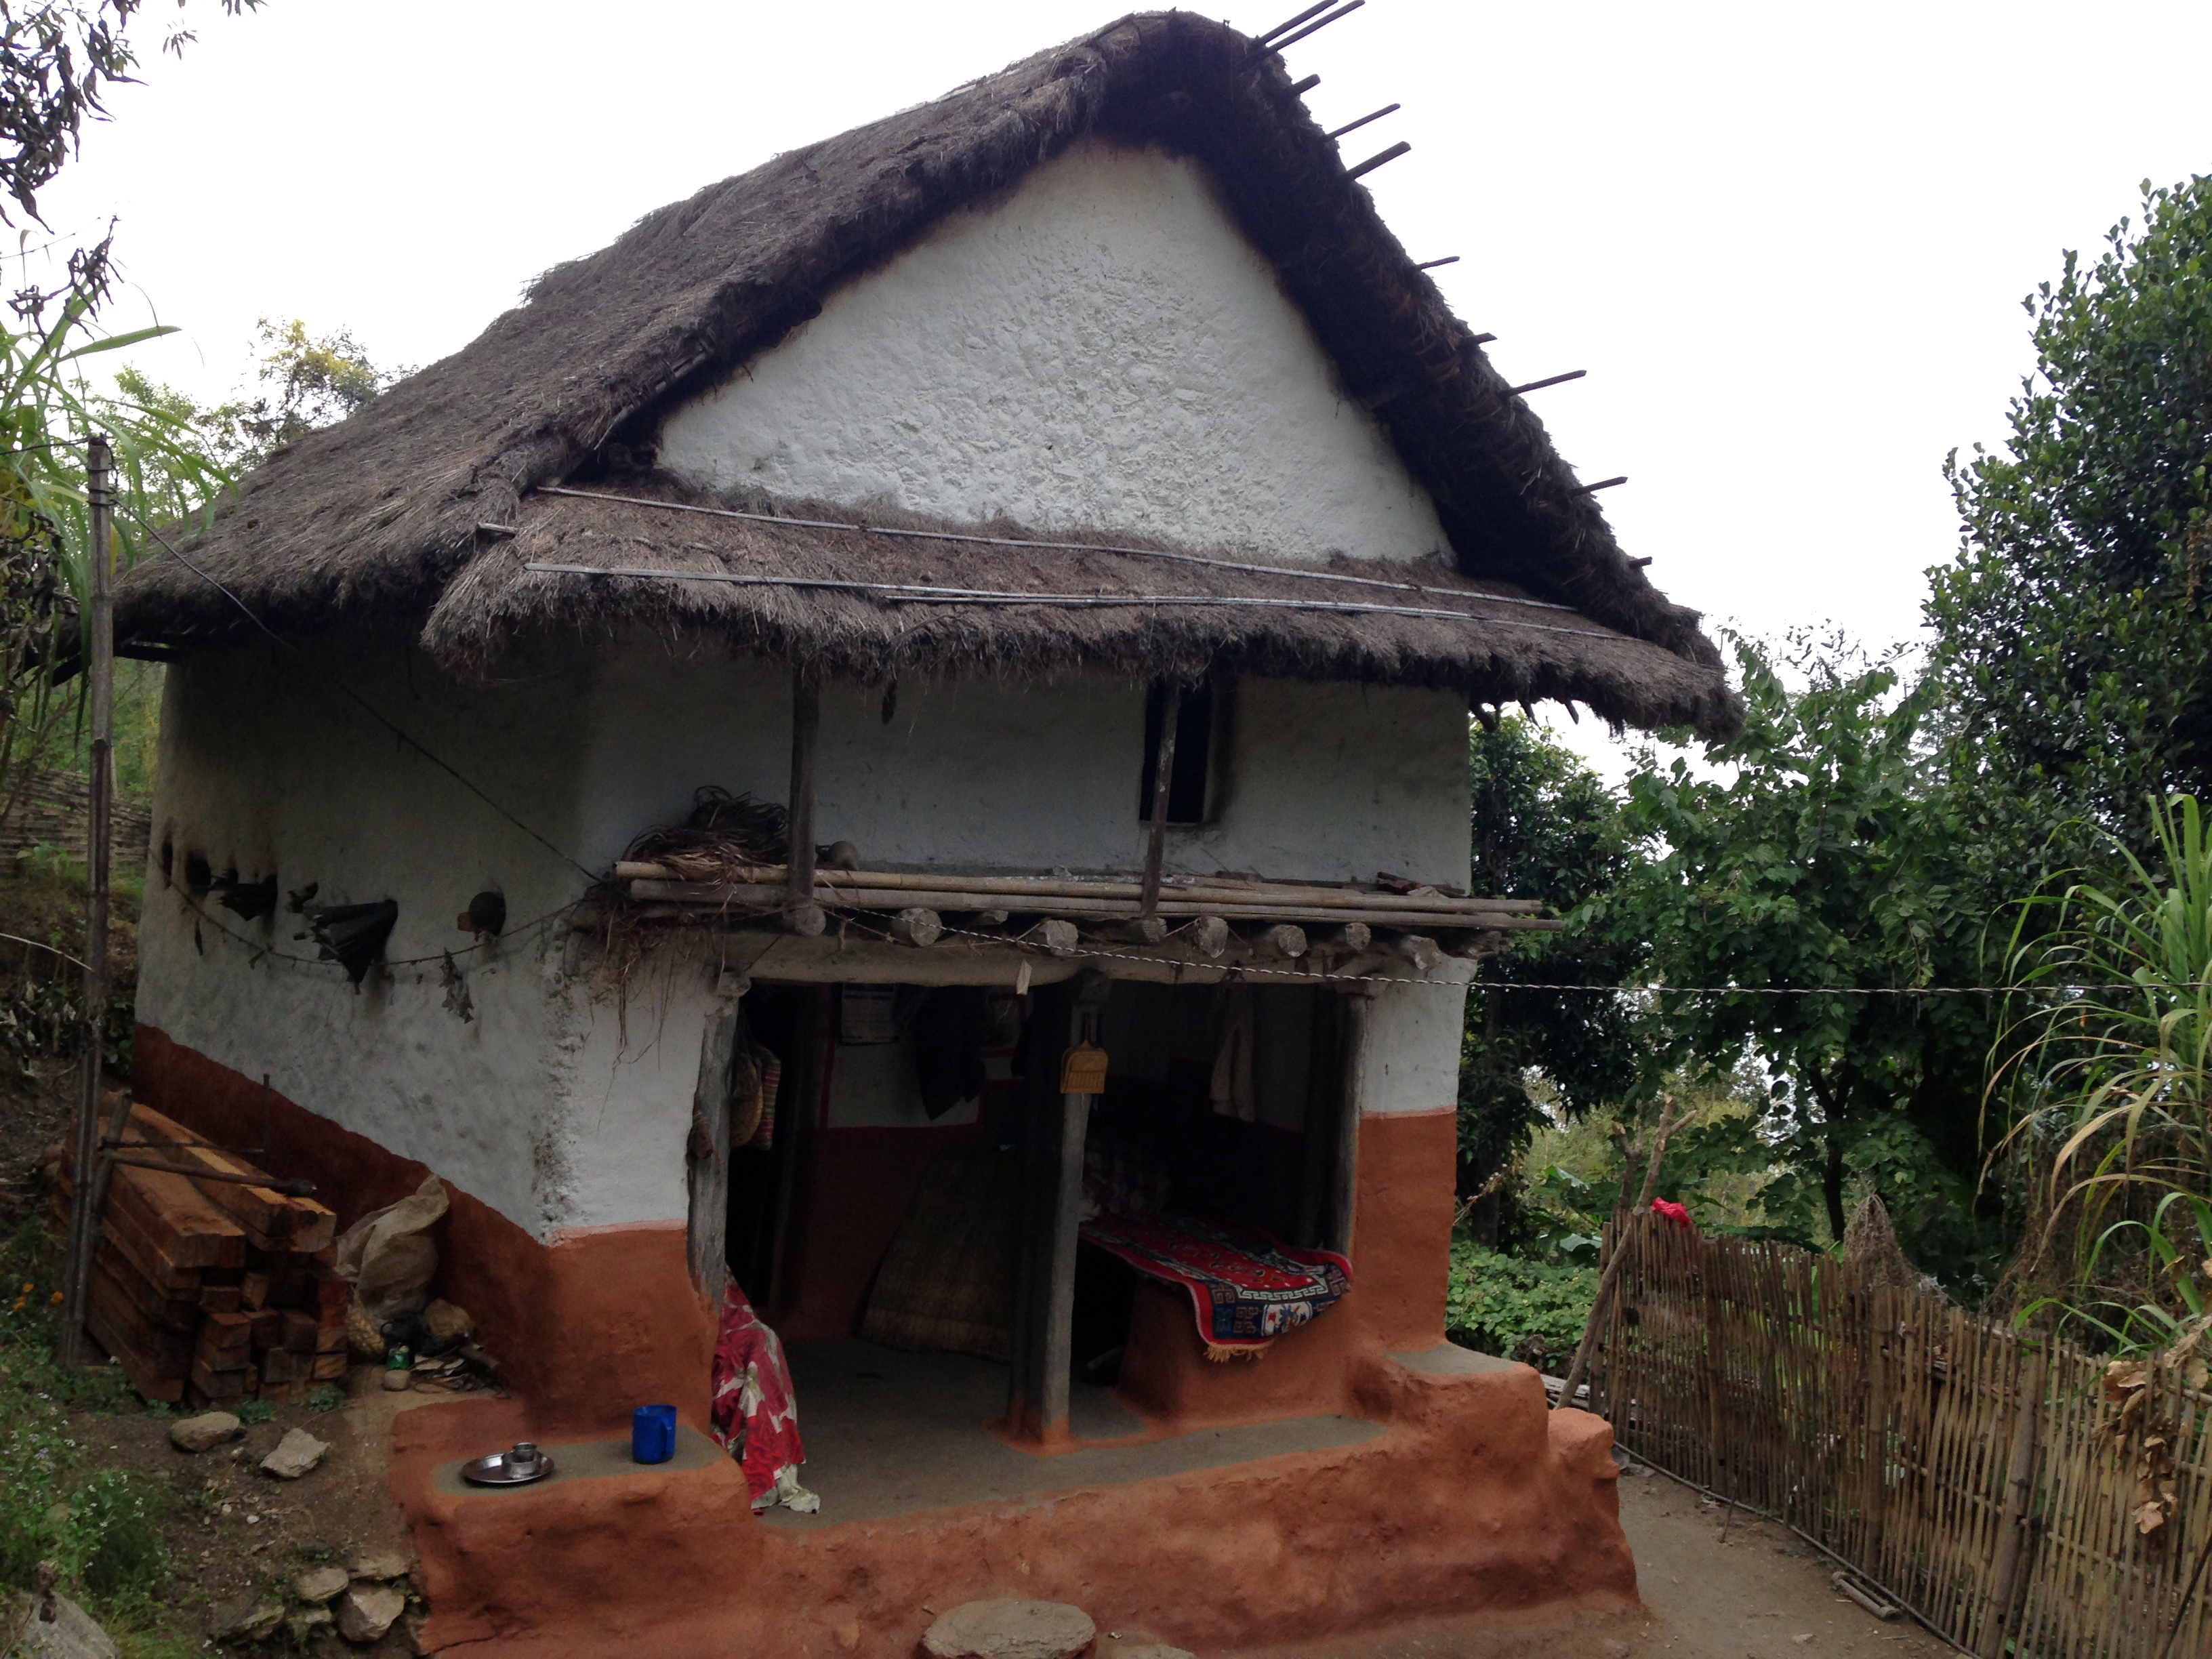 File:Nepali hut.JPG - Wikimedia Commons